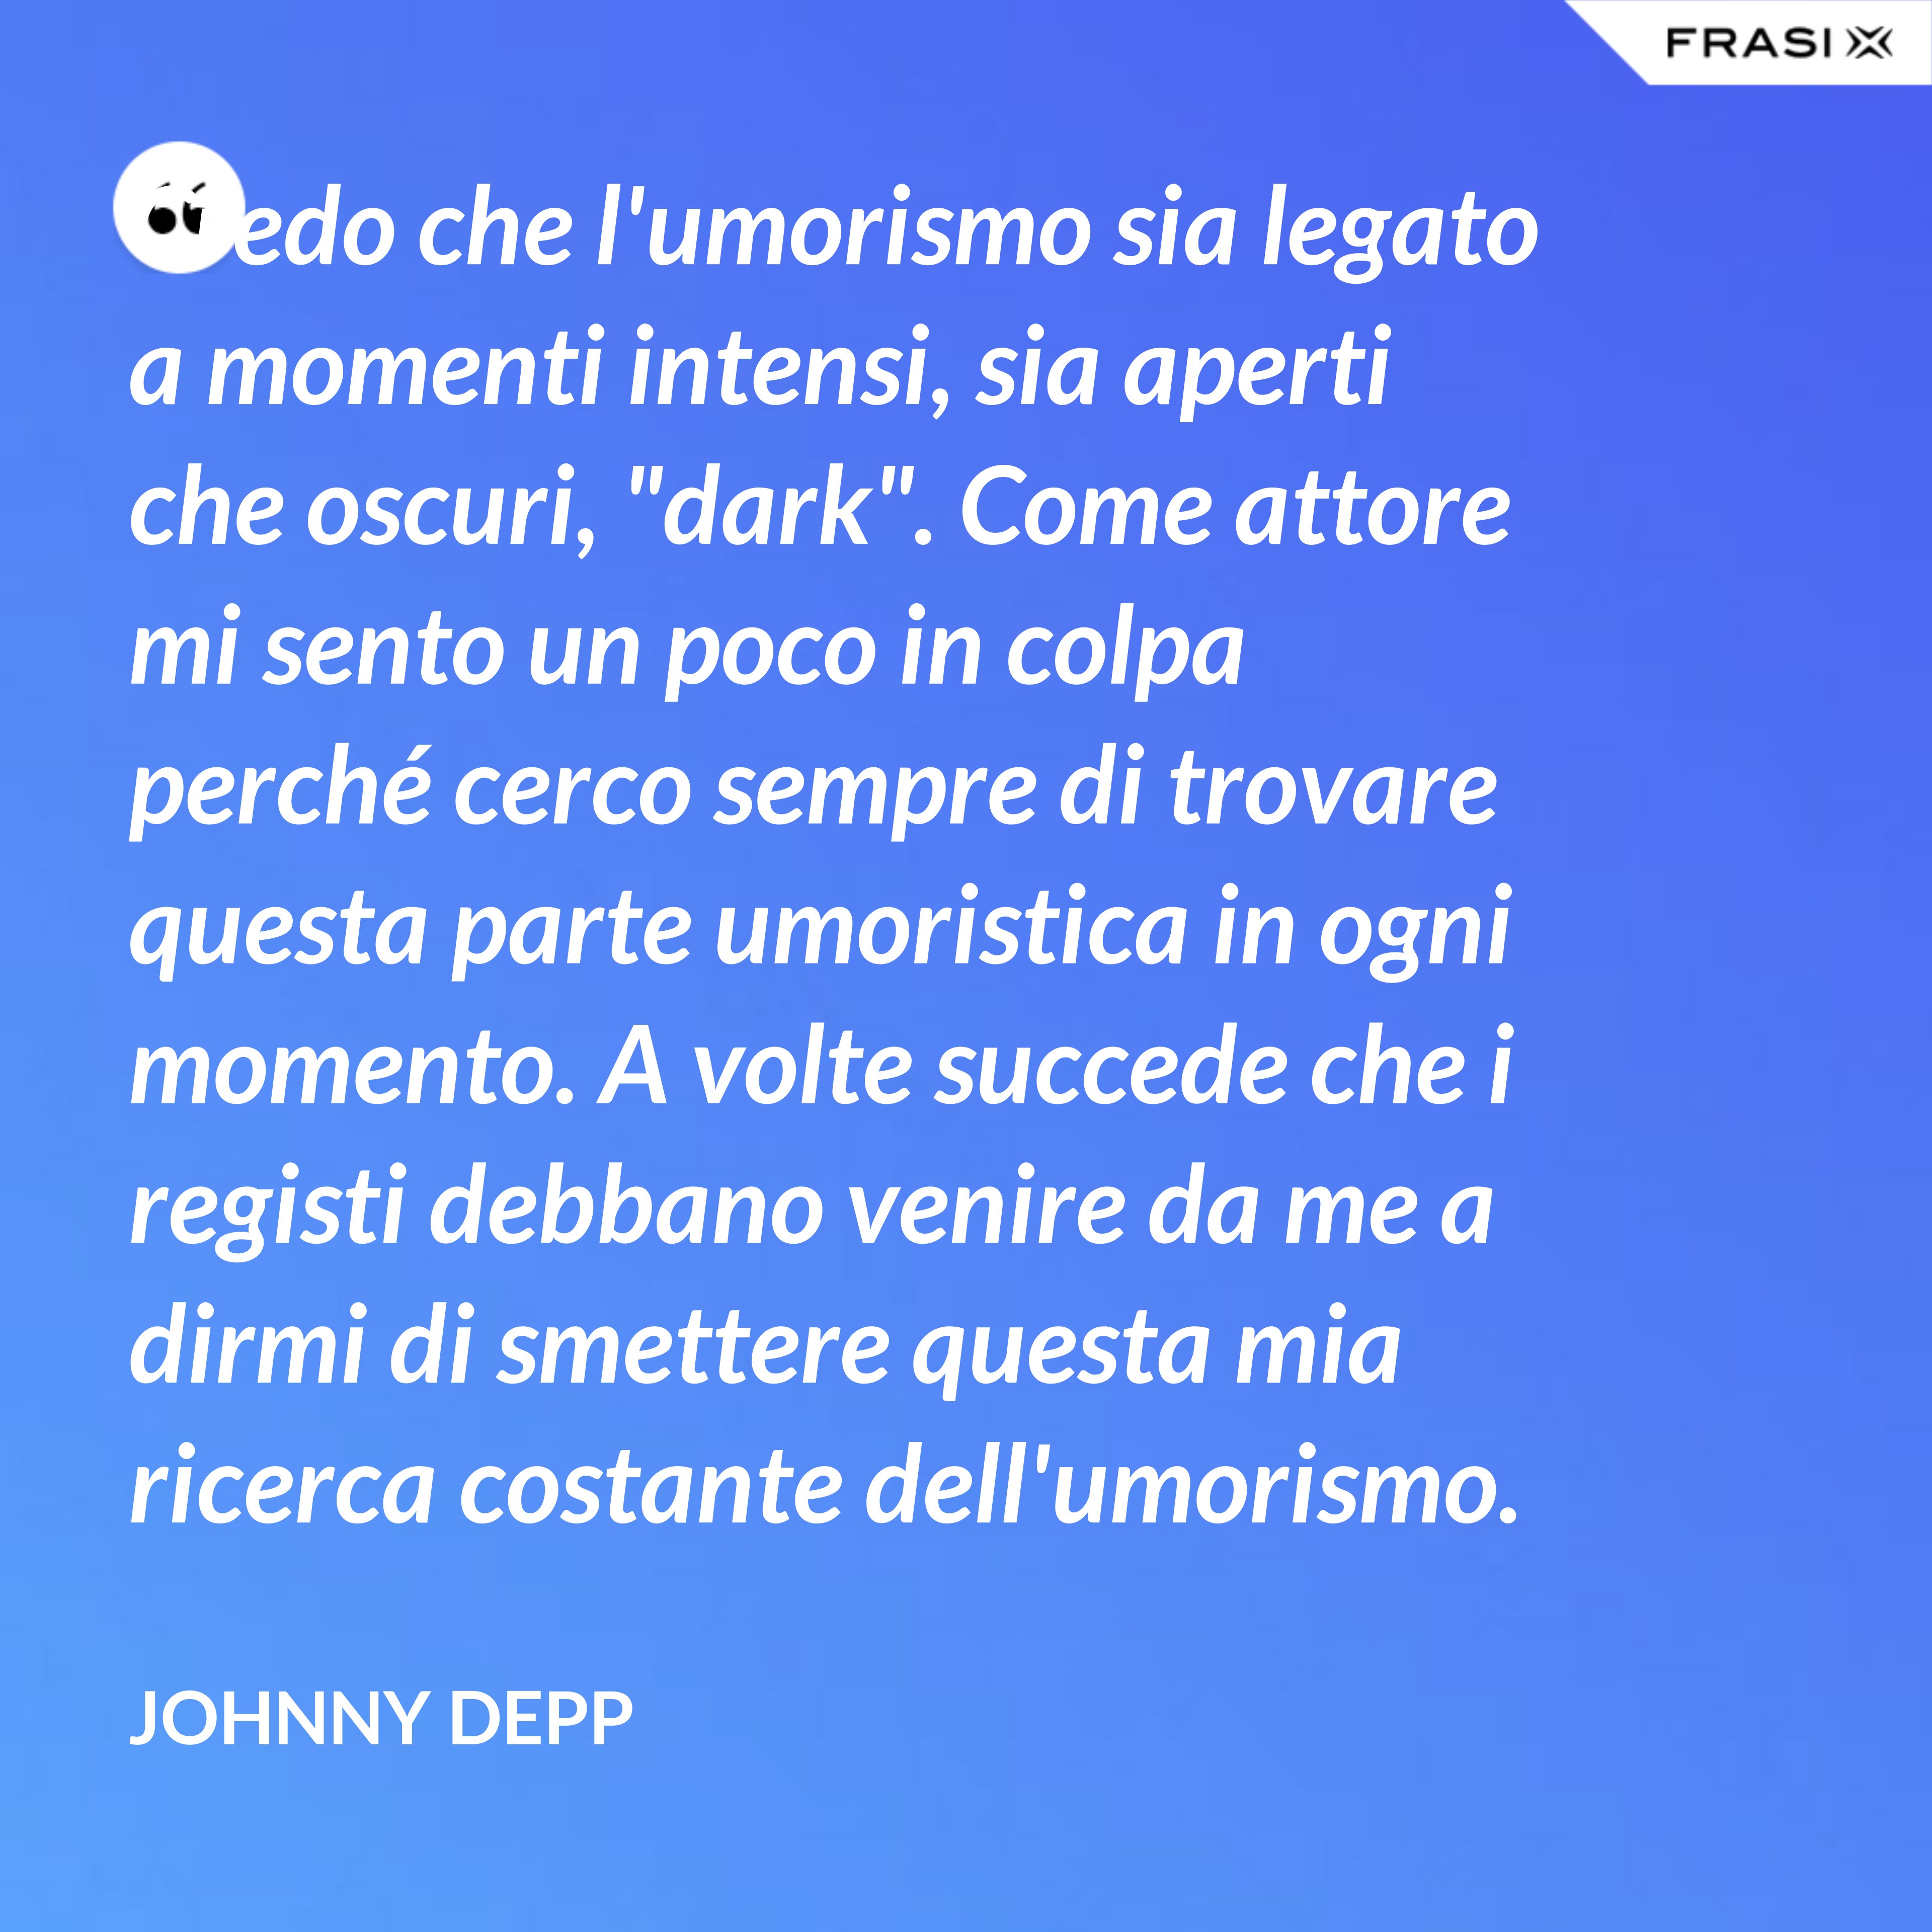 Credo che l'umorismo sia legato a momenti intensi, sia aperti che oscuri, "dark". Come attore mi sento un poco in colpa perché cerco sempre di trovare questa parte umoristica in ogni momento. A volte succede che i registi debbano venire da me a dirmi di smettere questa mia ricerca costante dell'umorismo. - Johnny Depp